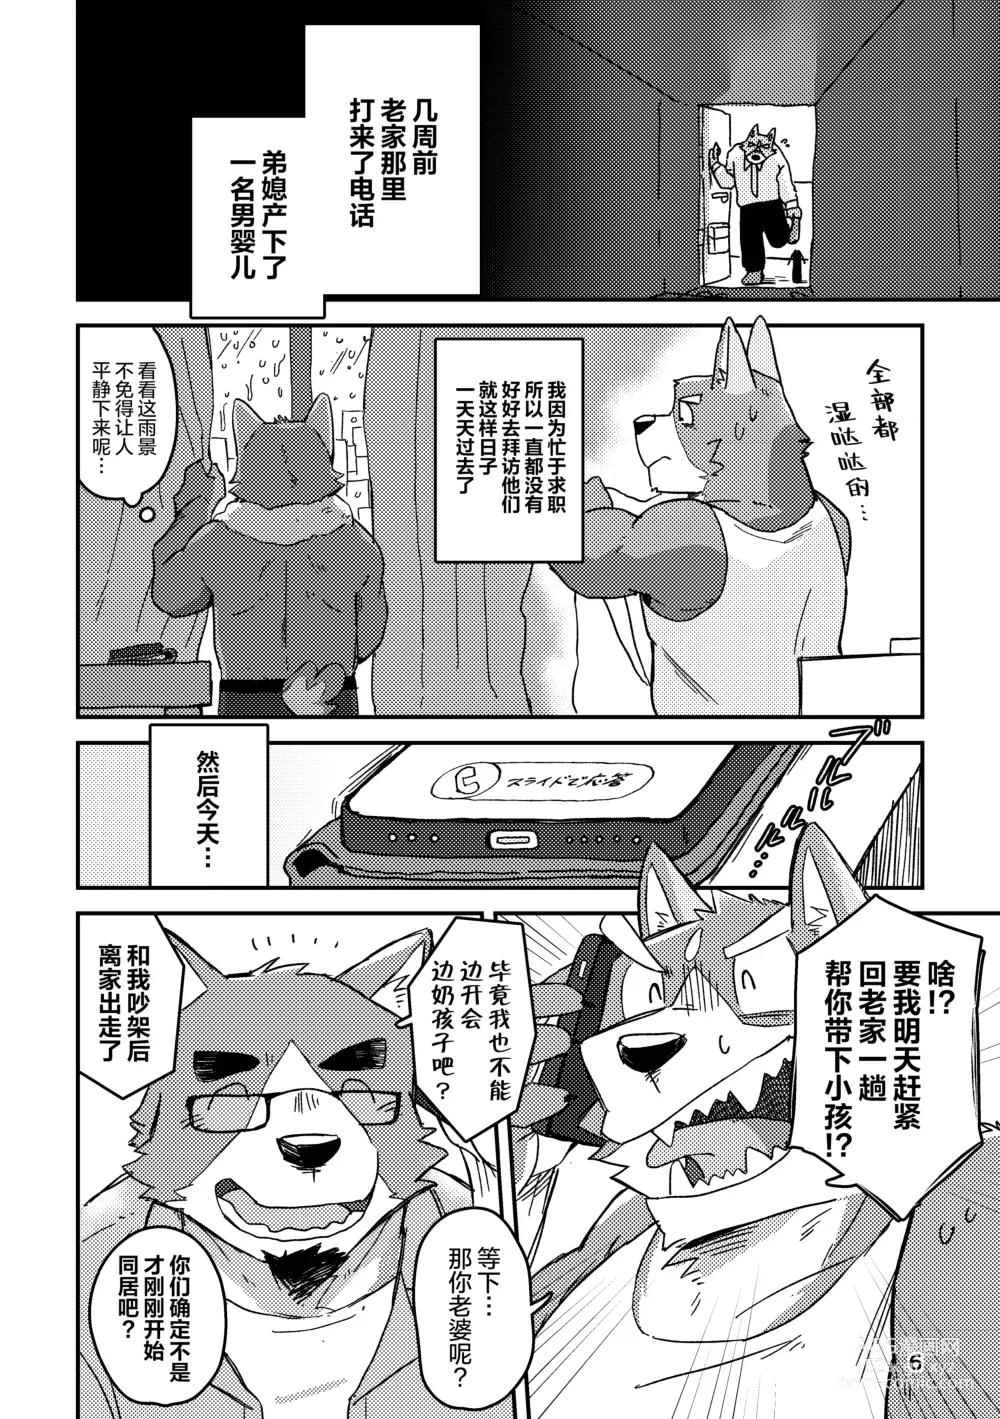 Page 6 of doujinshi 约定的龙穴